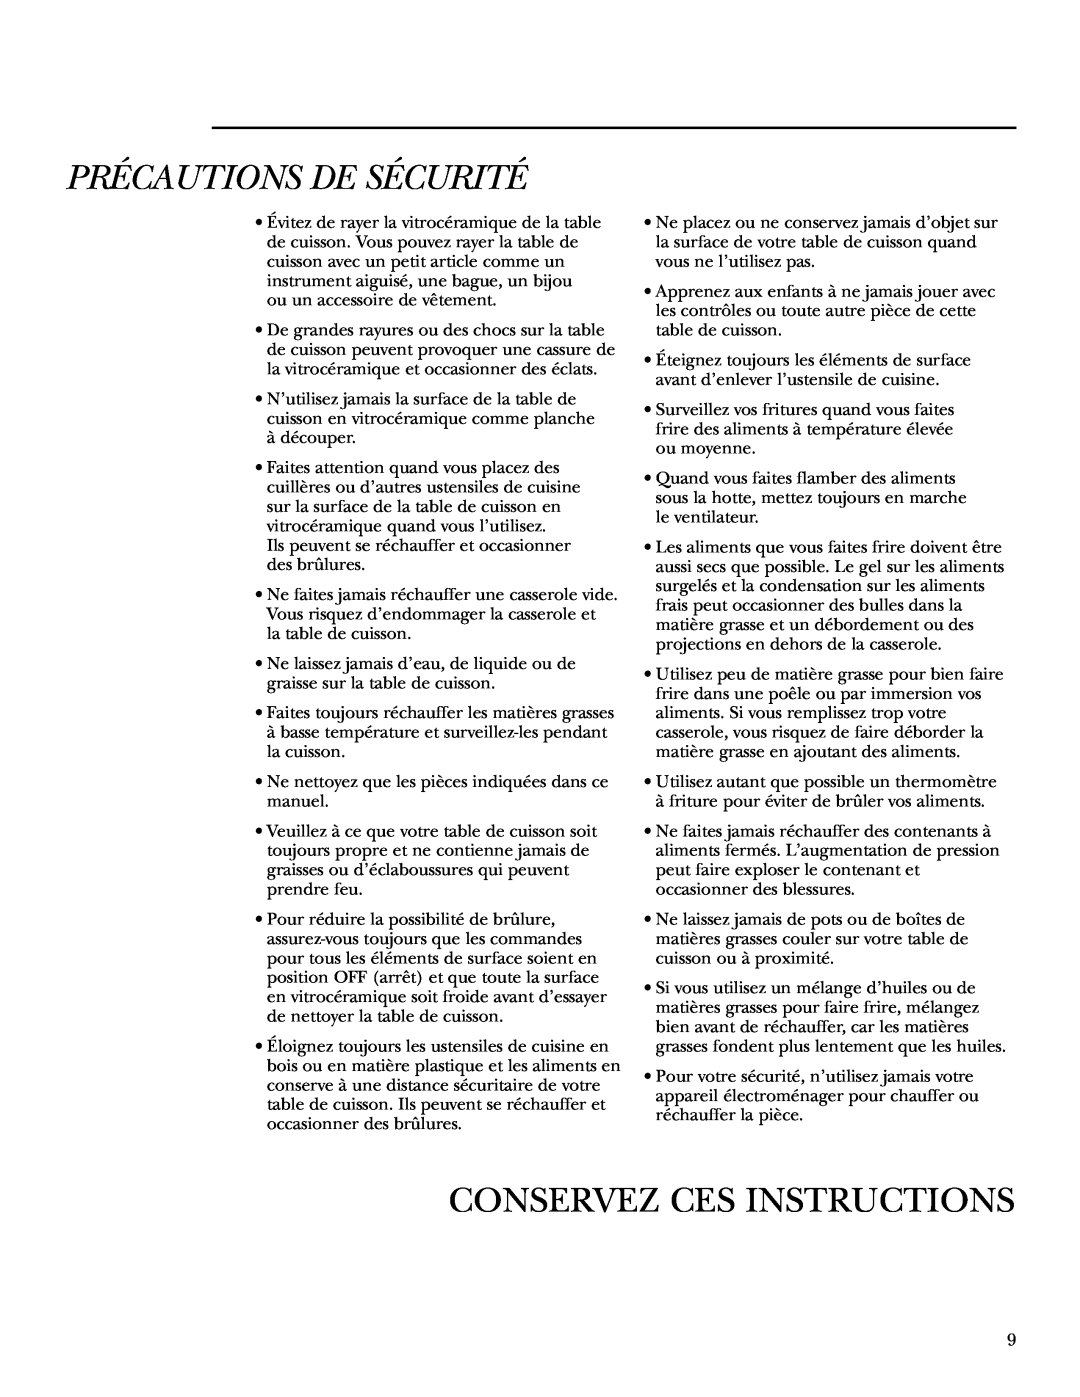 GE ZEU36K owner manual Conservez Ces Instructions, Précautions De Sécurité 